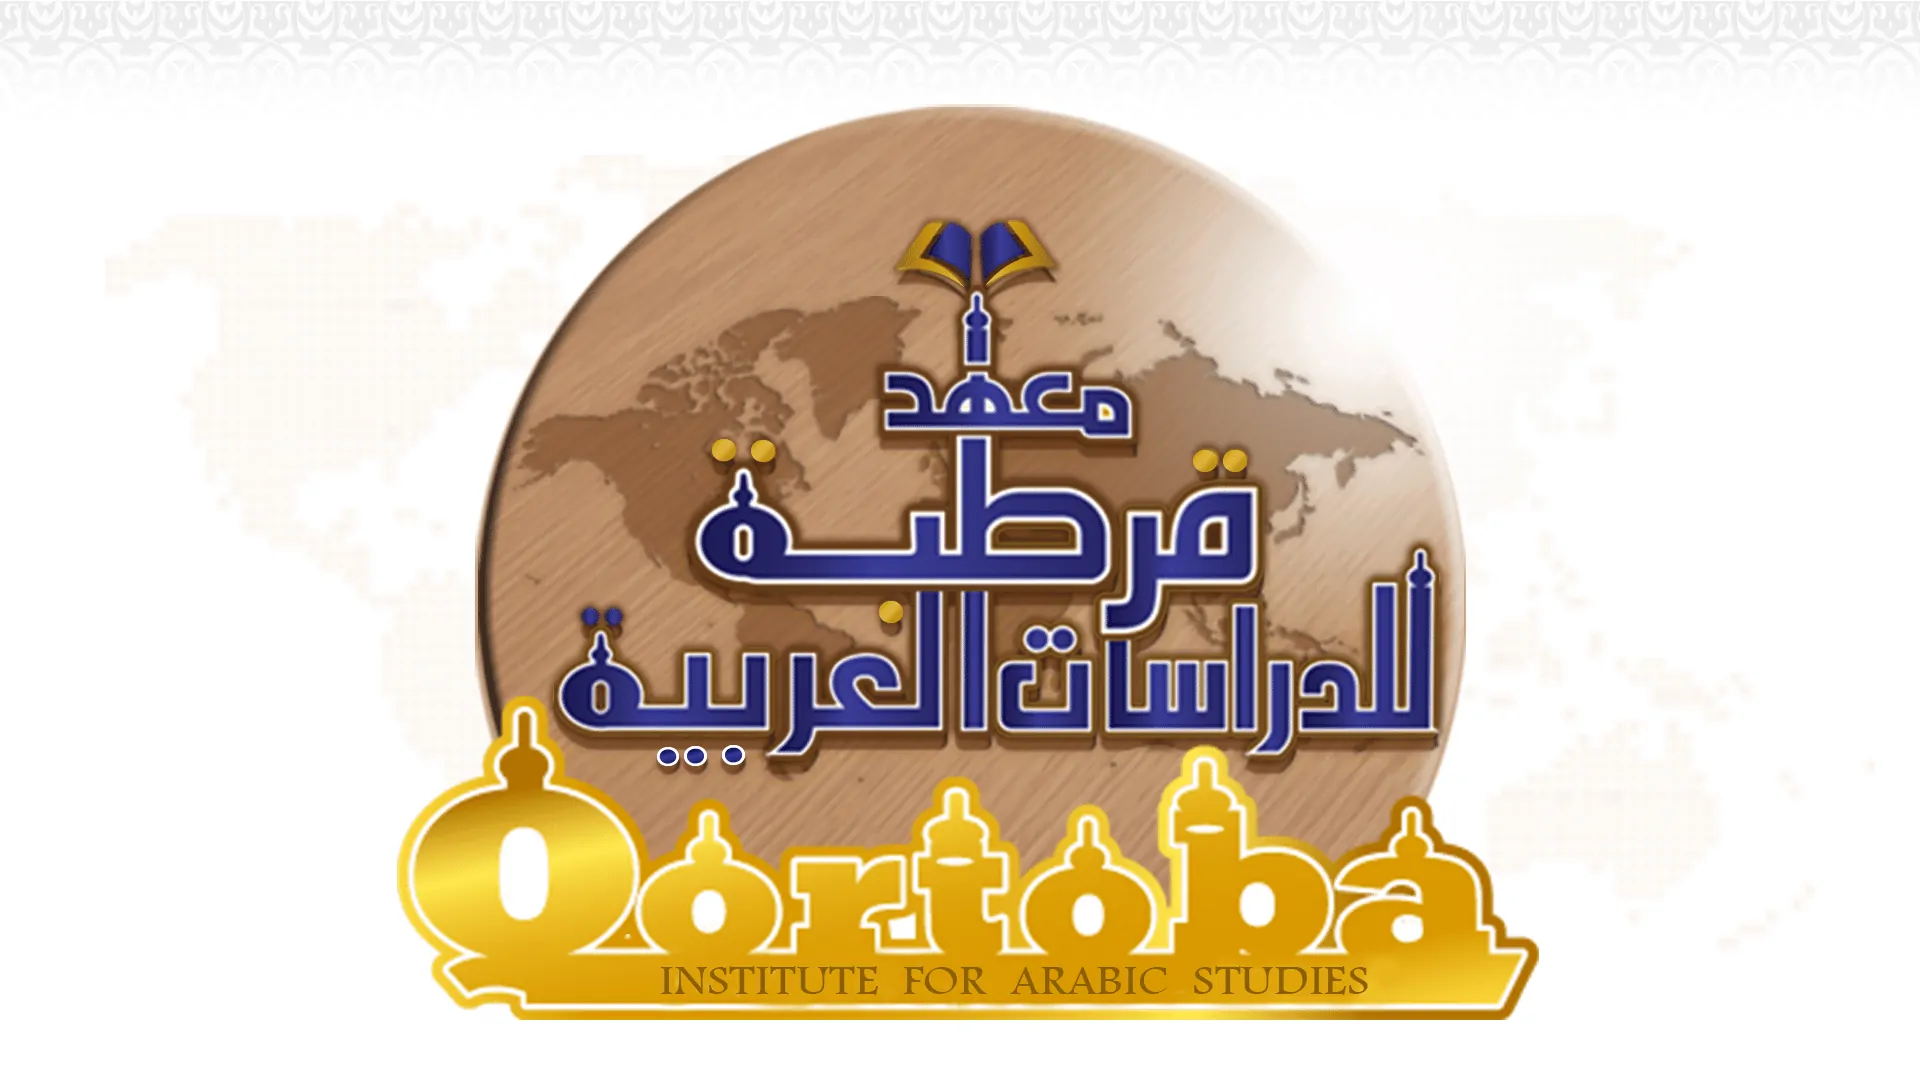 Qortoba Institute for Arabic Studies